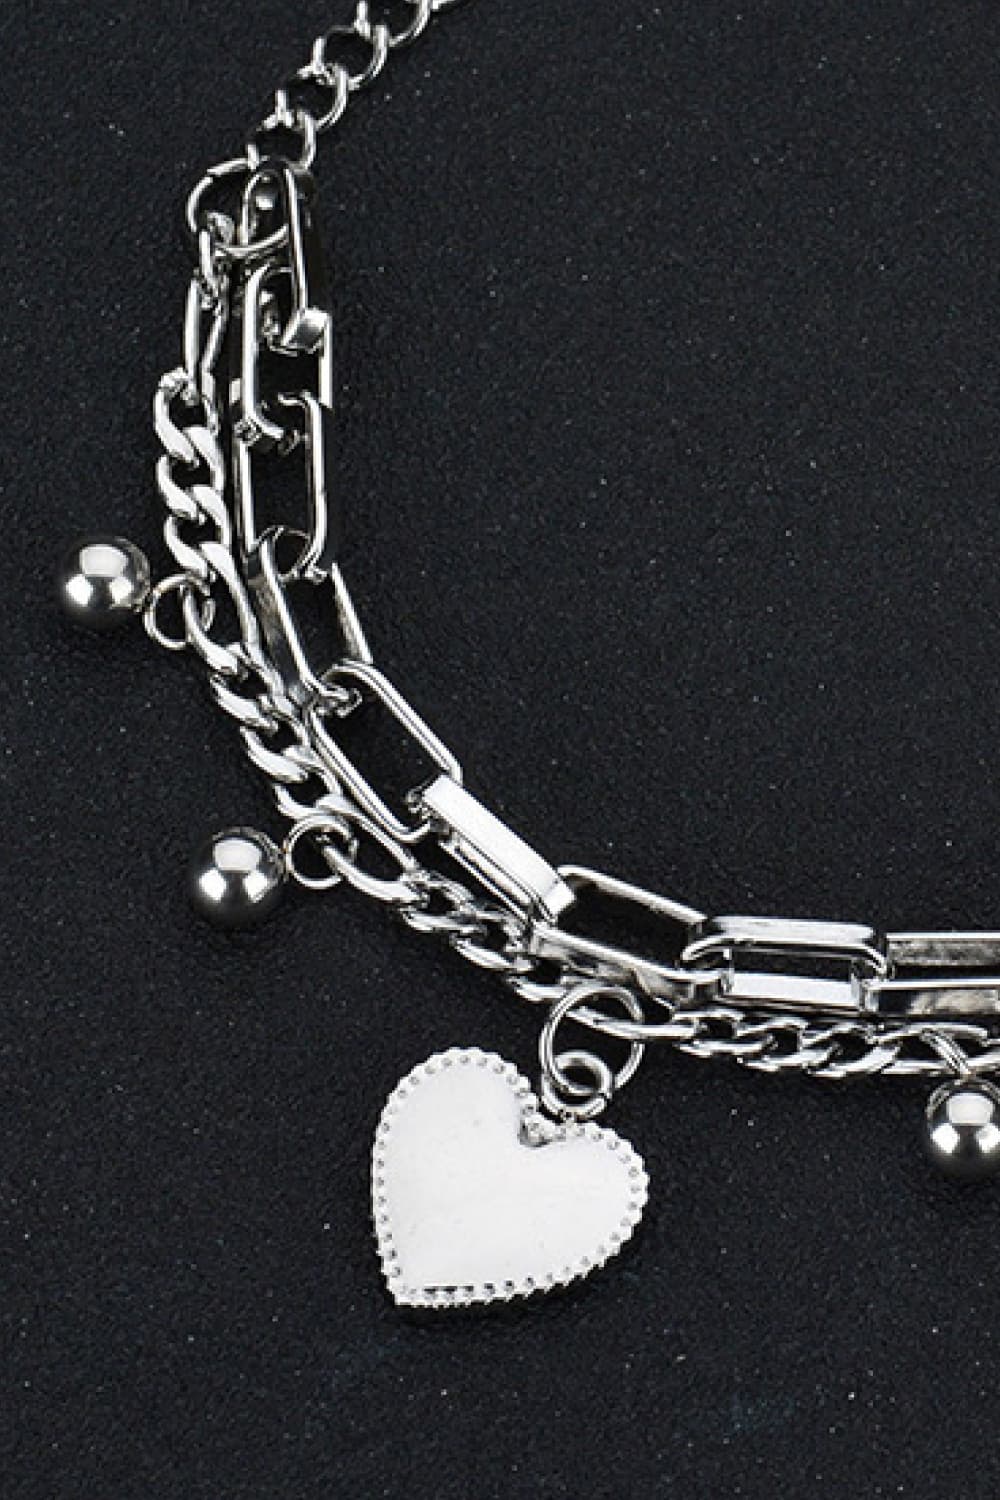 Heart Charm Stainless Steel Bracelet - Guy Christopher